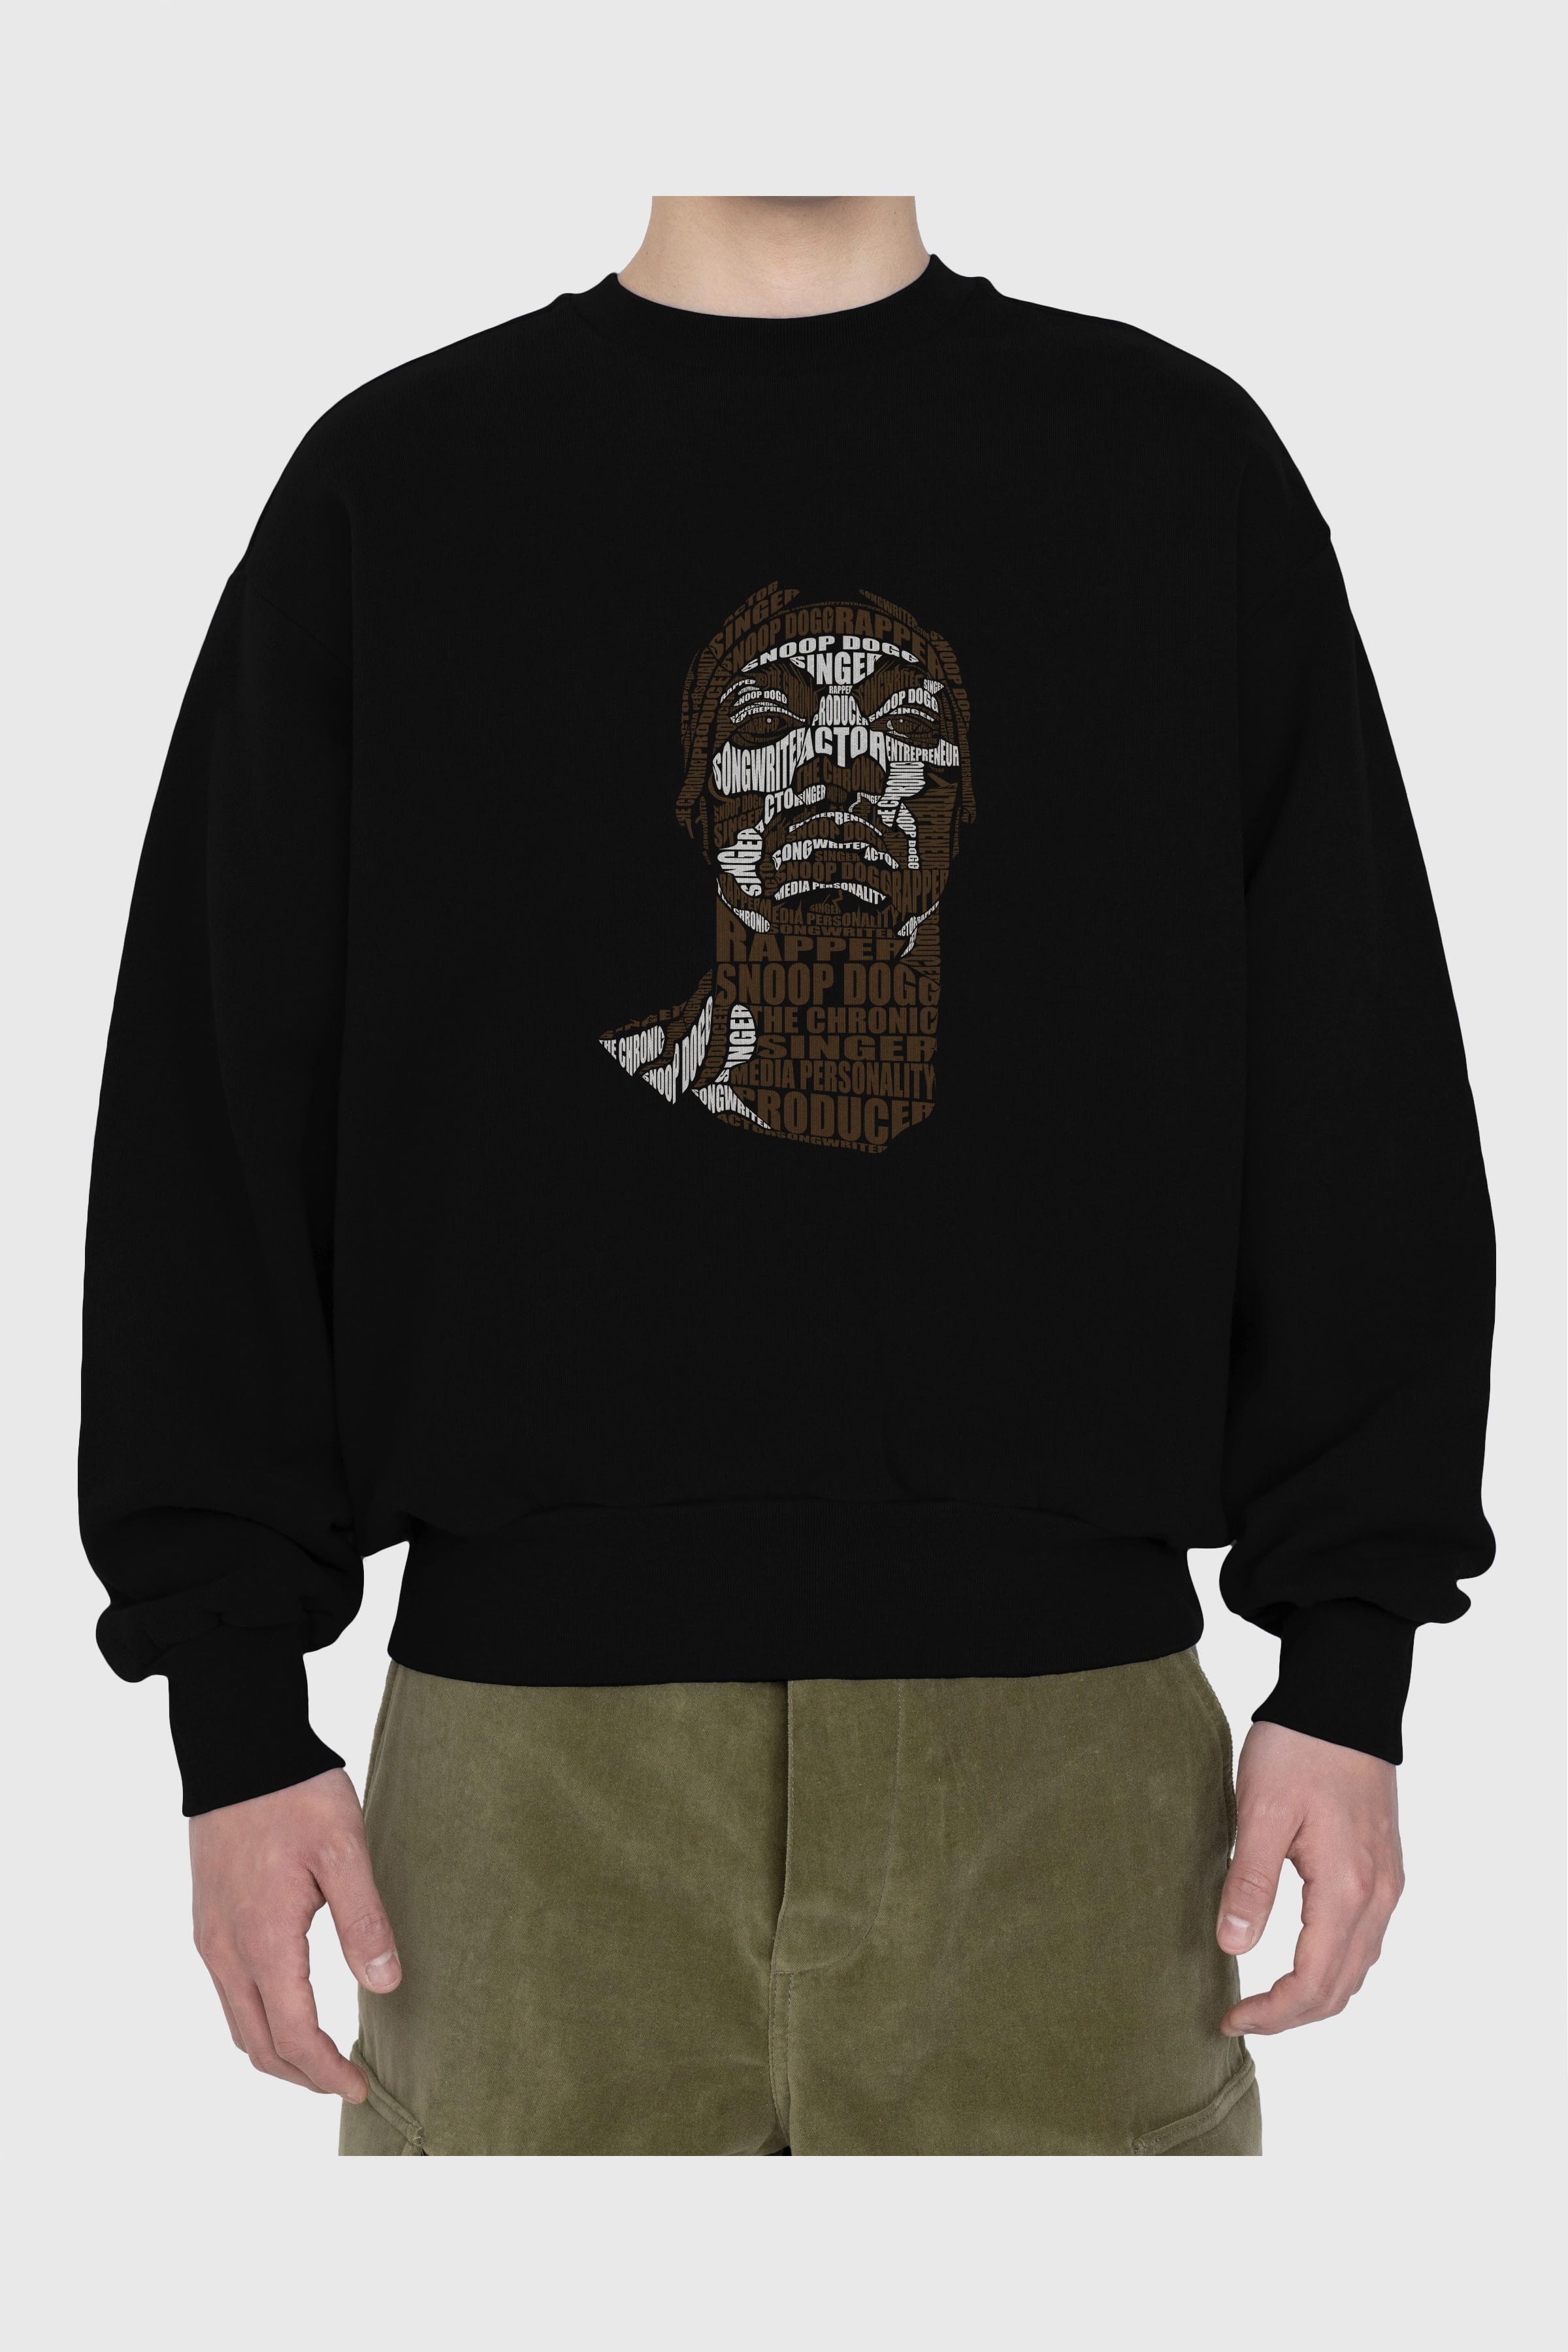 Snoop Dogg Calligram Ön Baskılı Oversize Sweatshirt Erkek Kadın Unisex